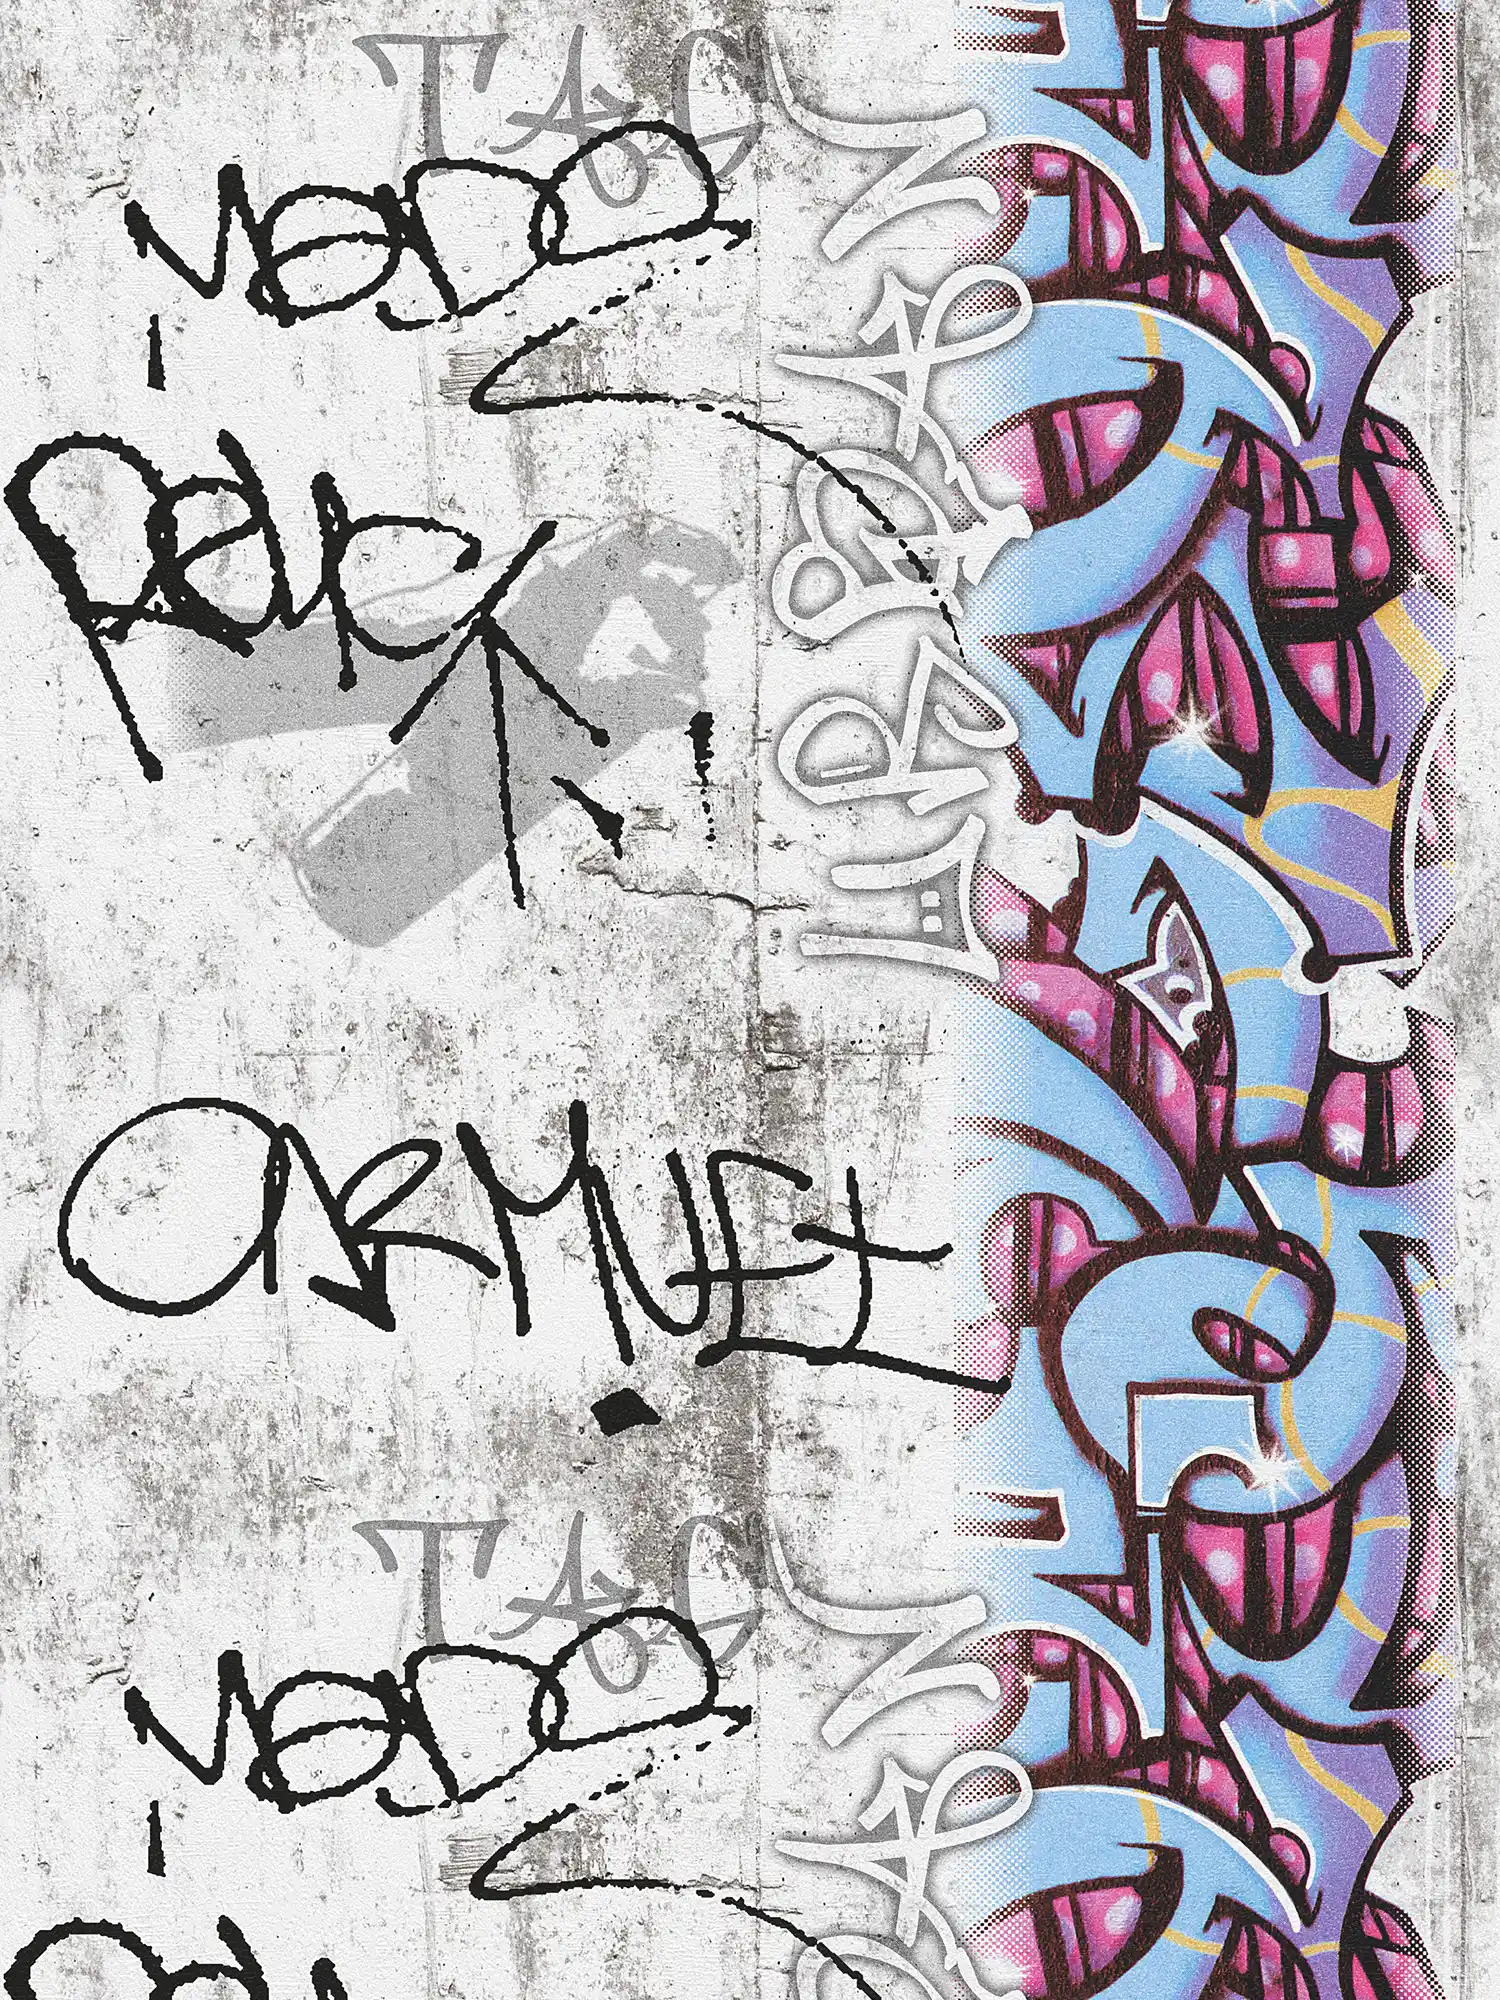 Graffiti behang met betonlook & grafisch design - grijs, blauw
